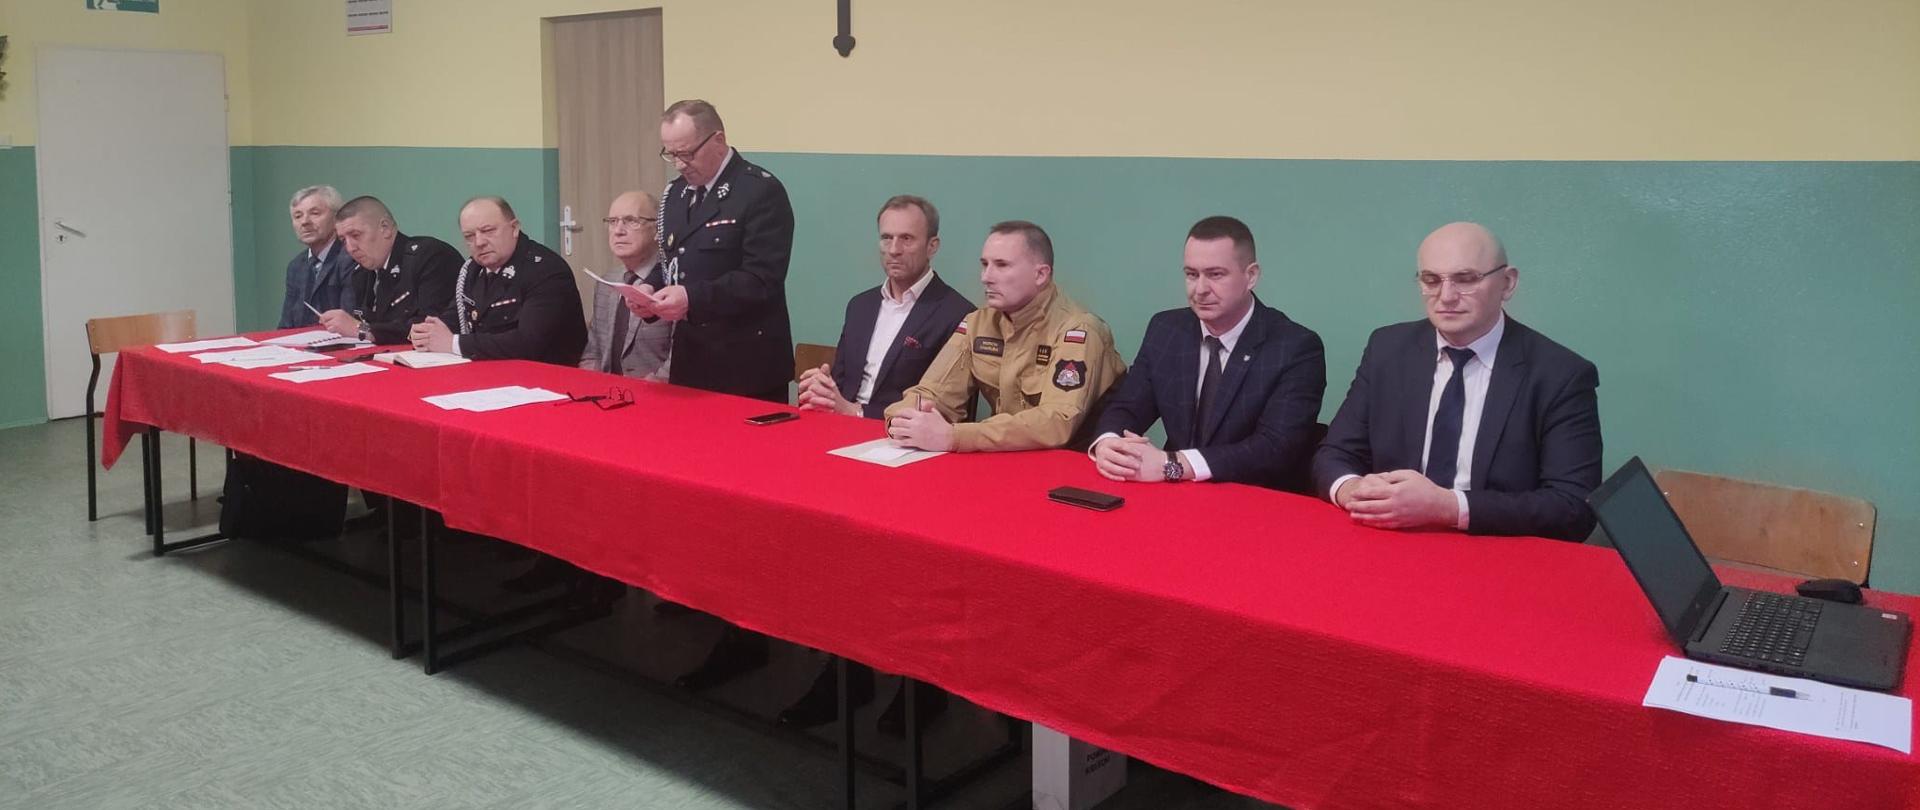 Zdjęcie przedstawia organizatorów i gości siedzący przy stole podczas spotkania sprawozdawczego Ochotniczej Straży Pożarnej w Rykoszynie.